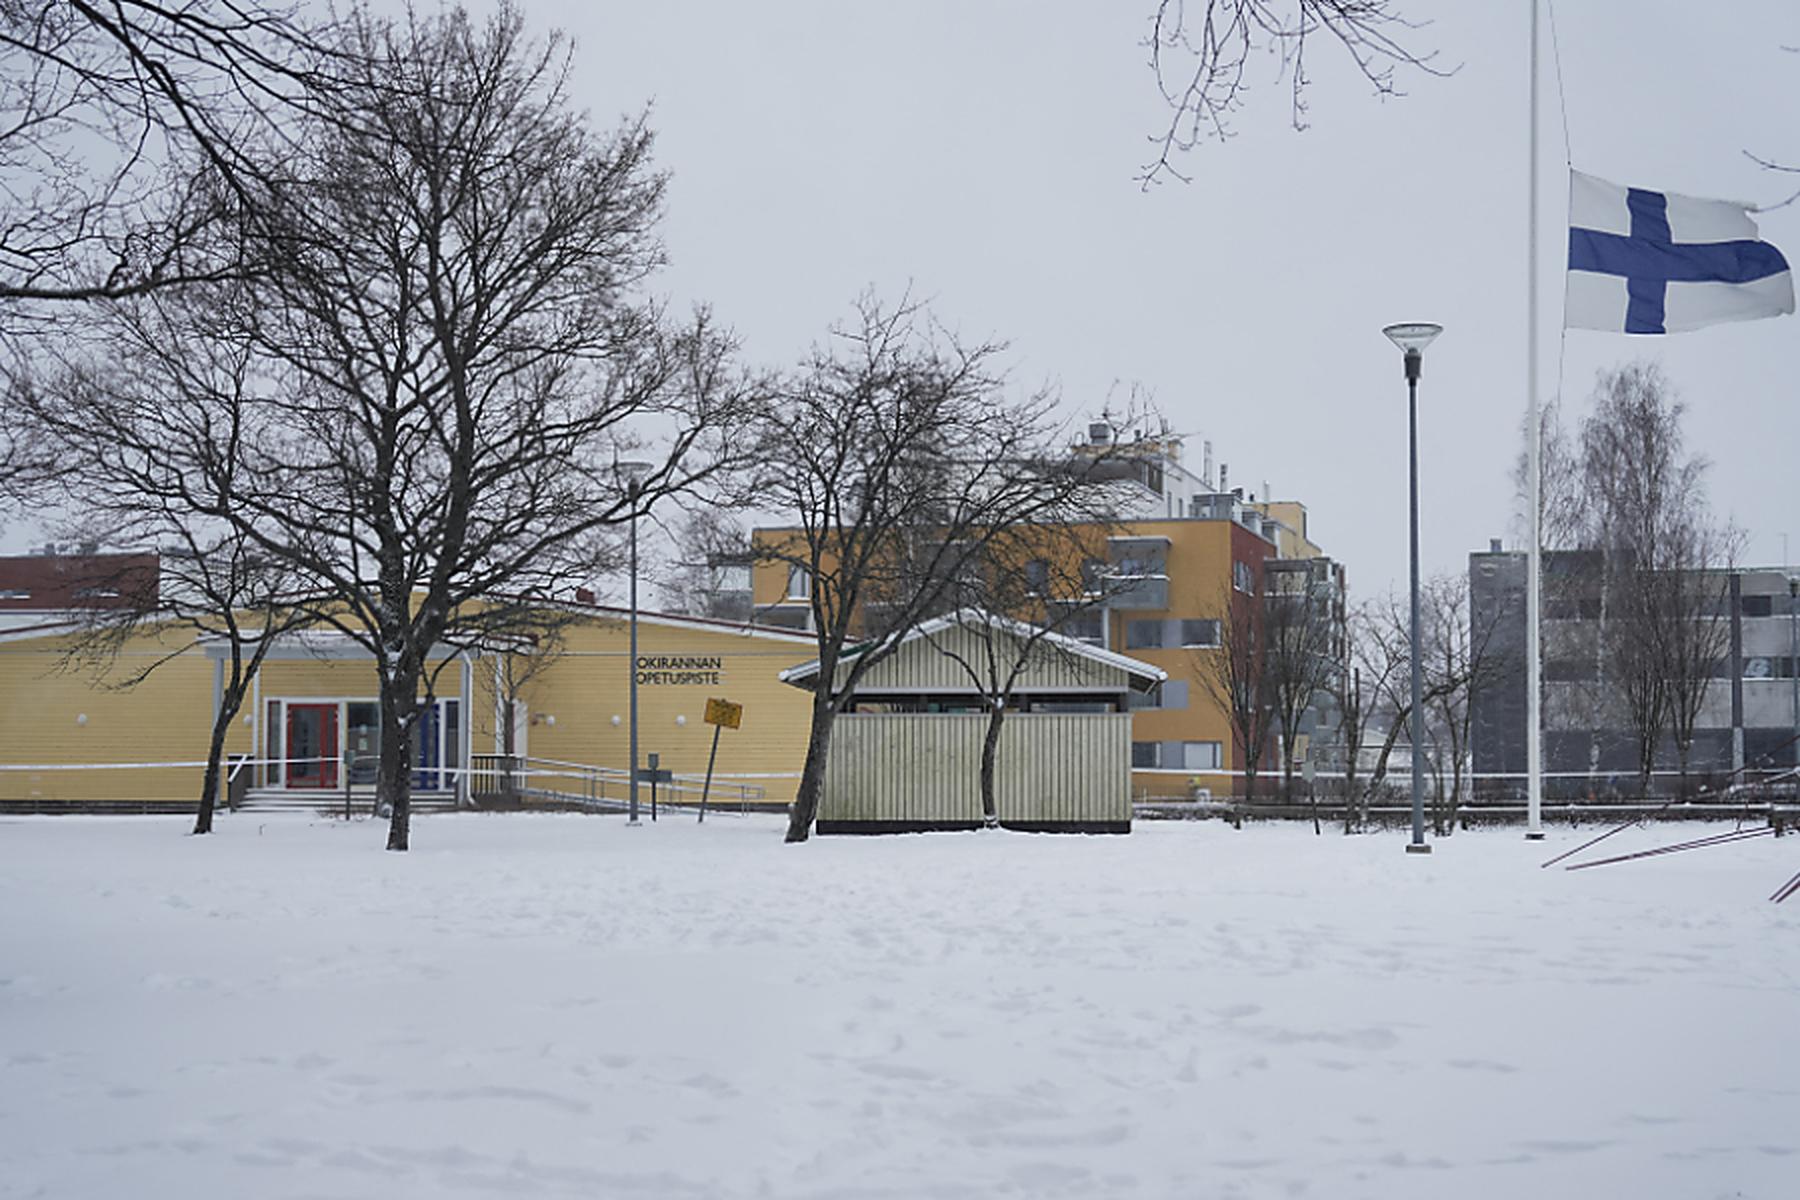 Vantaa: Mobbing als Motiv für Schusswaffenangriff in Finnland